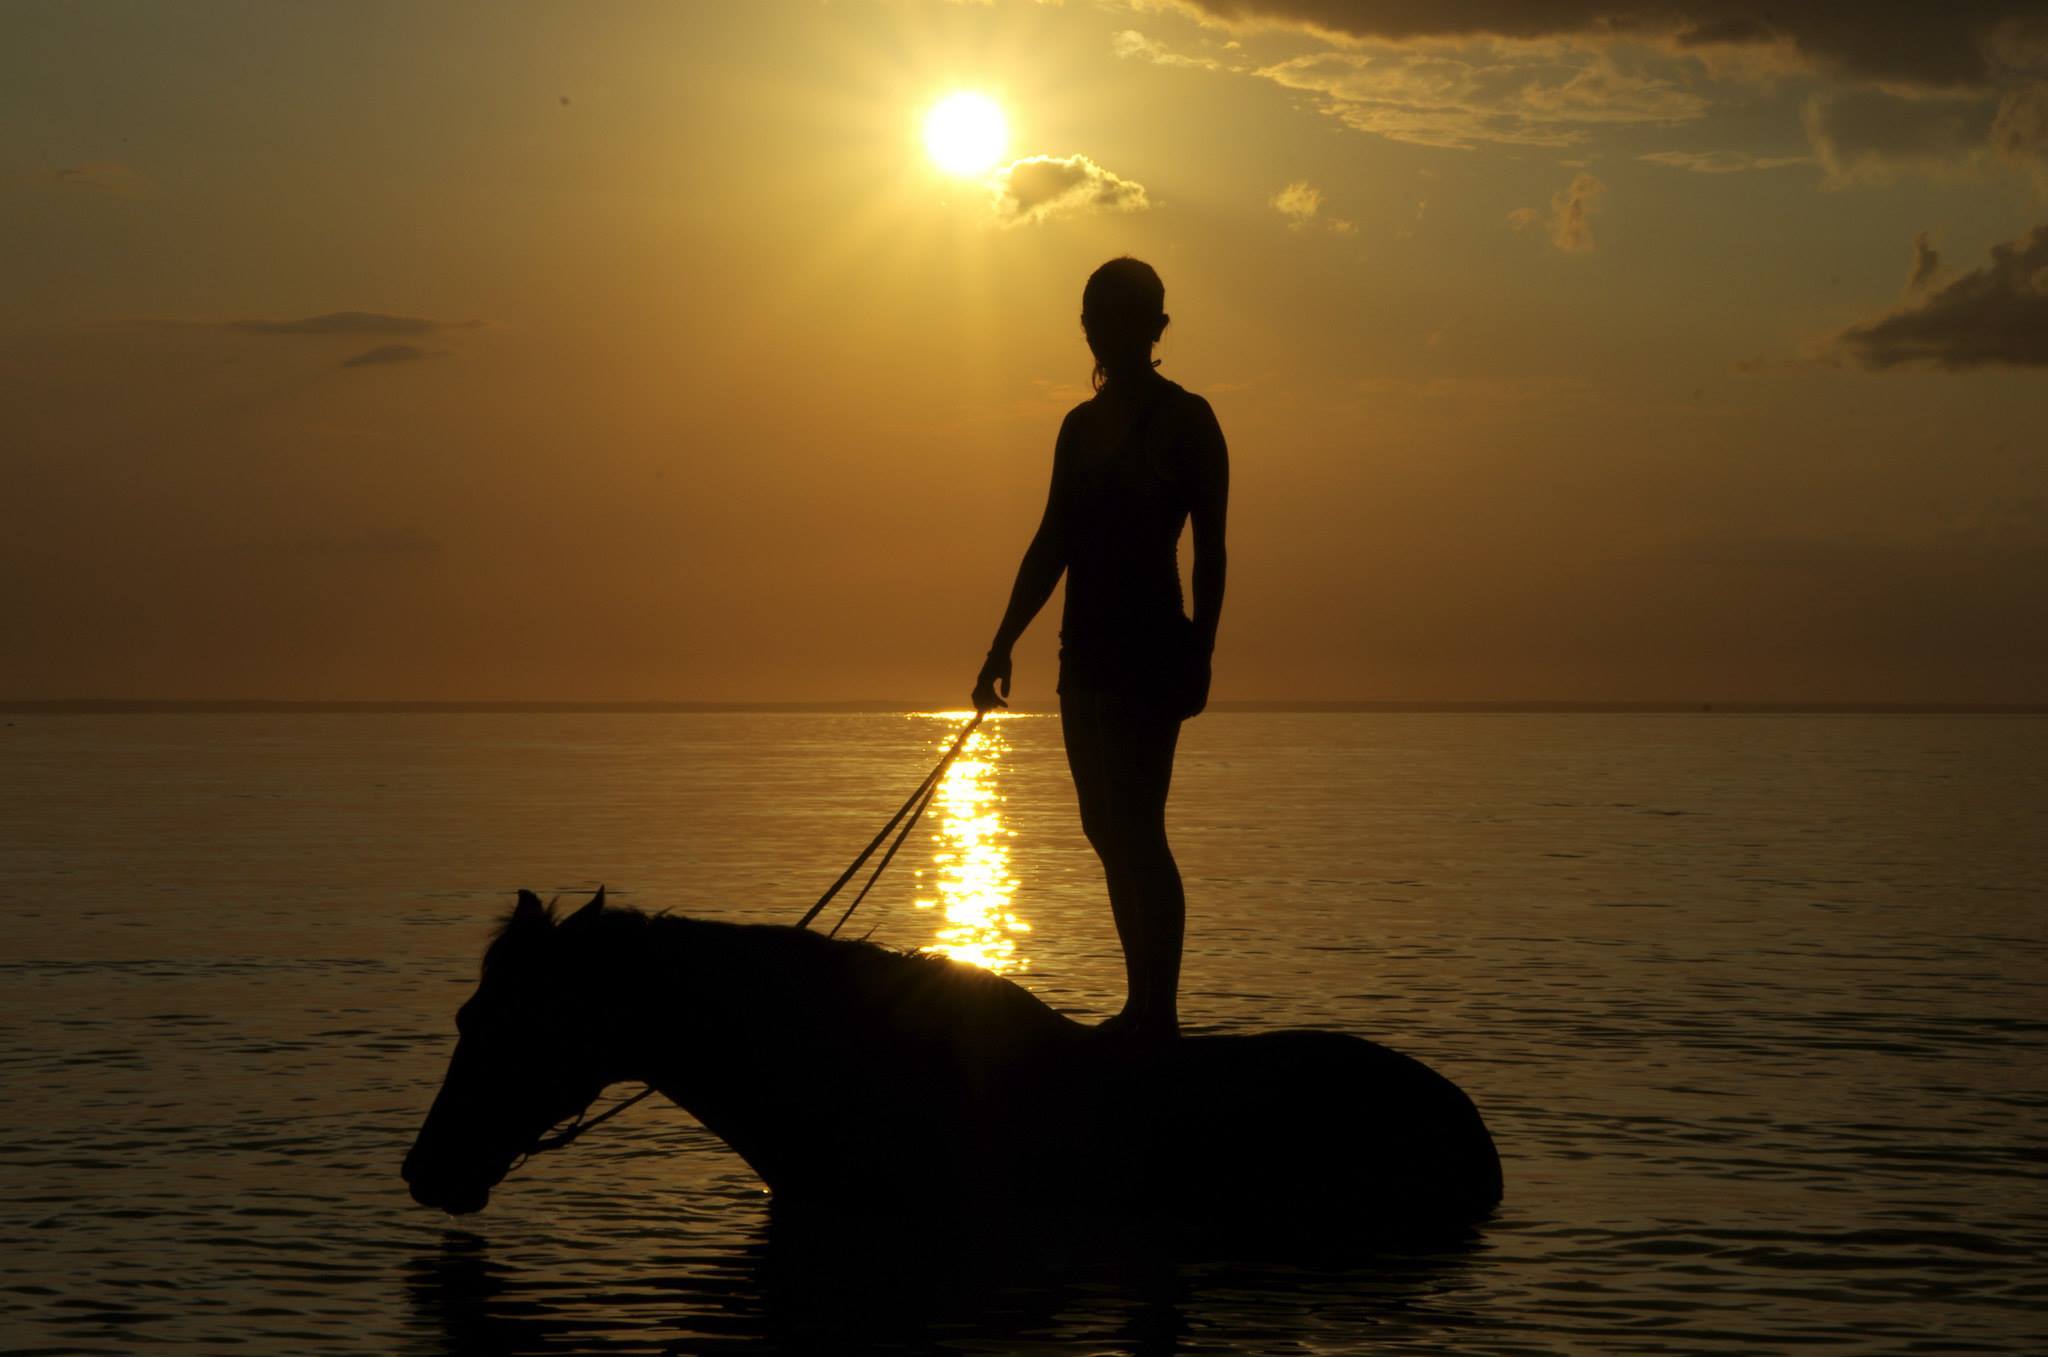 African Paradise - horseXperiences™ GO EQUESTRIAN